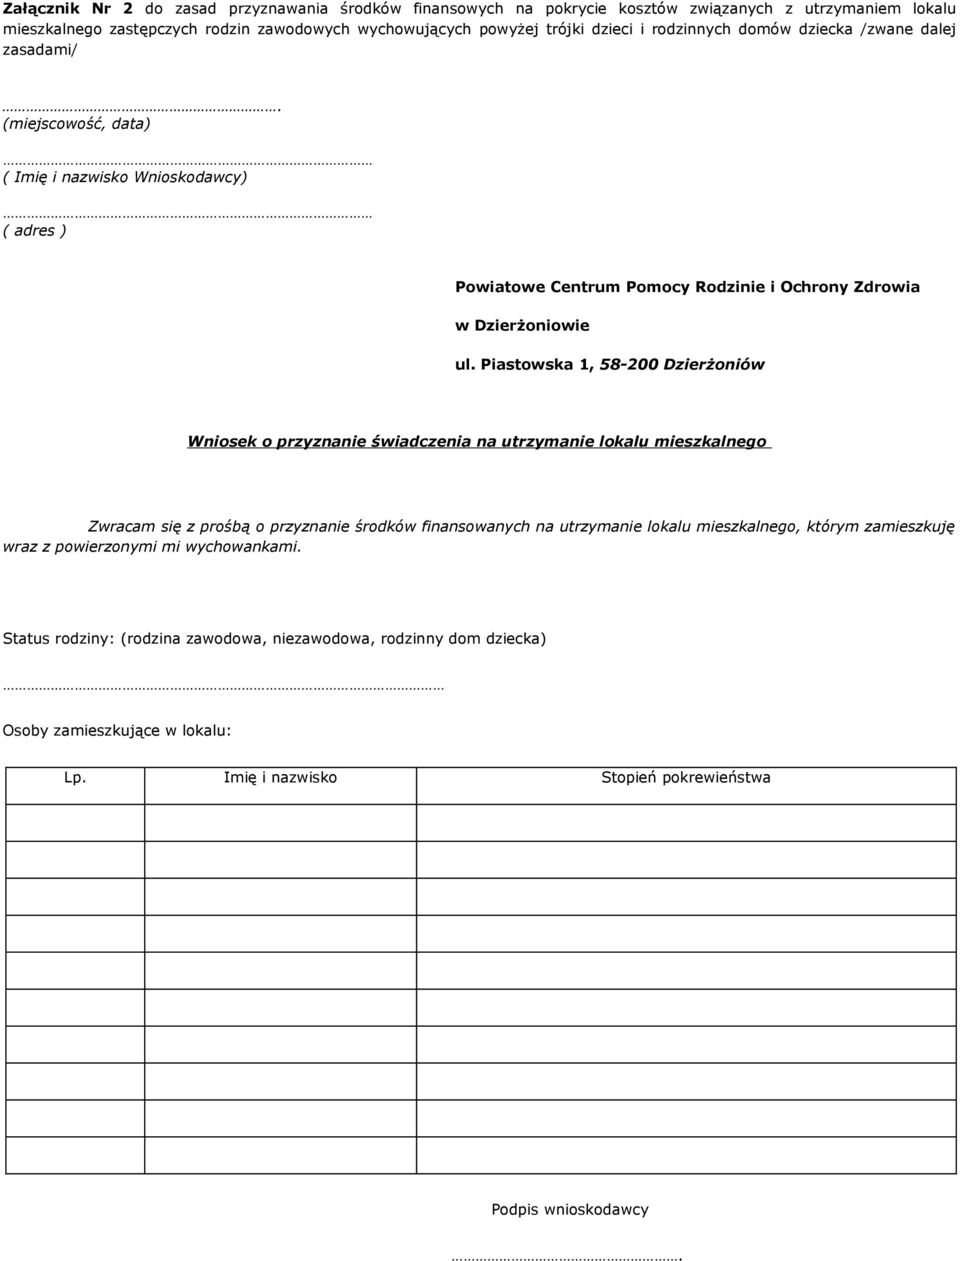 Piastowska 1, 58-200 Dzierżoniów Wniosek o przyznanie świadczenia na utrzymanie lokalu mieszkalnego Zwracam się z prośbą o przyznanie środków finansowanych na